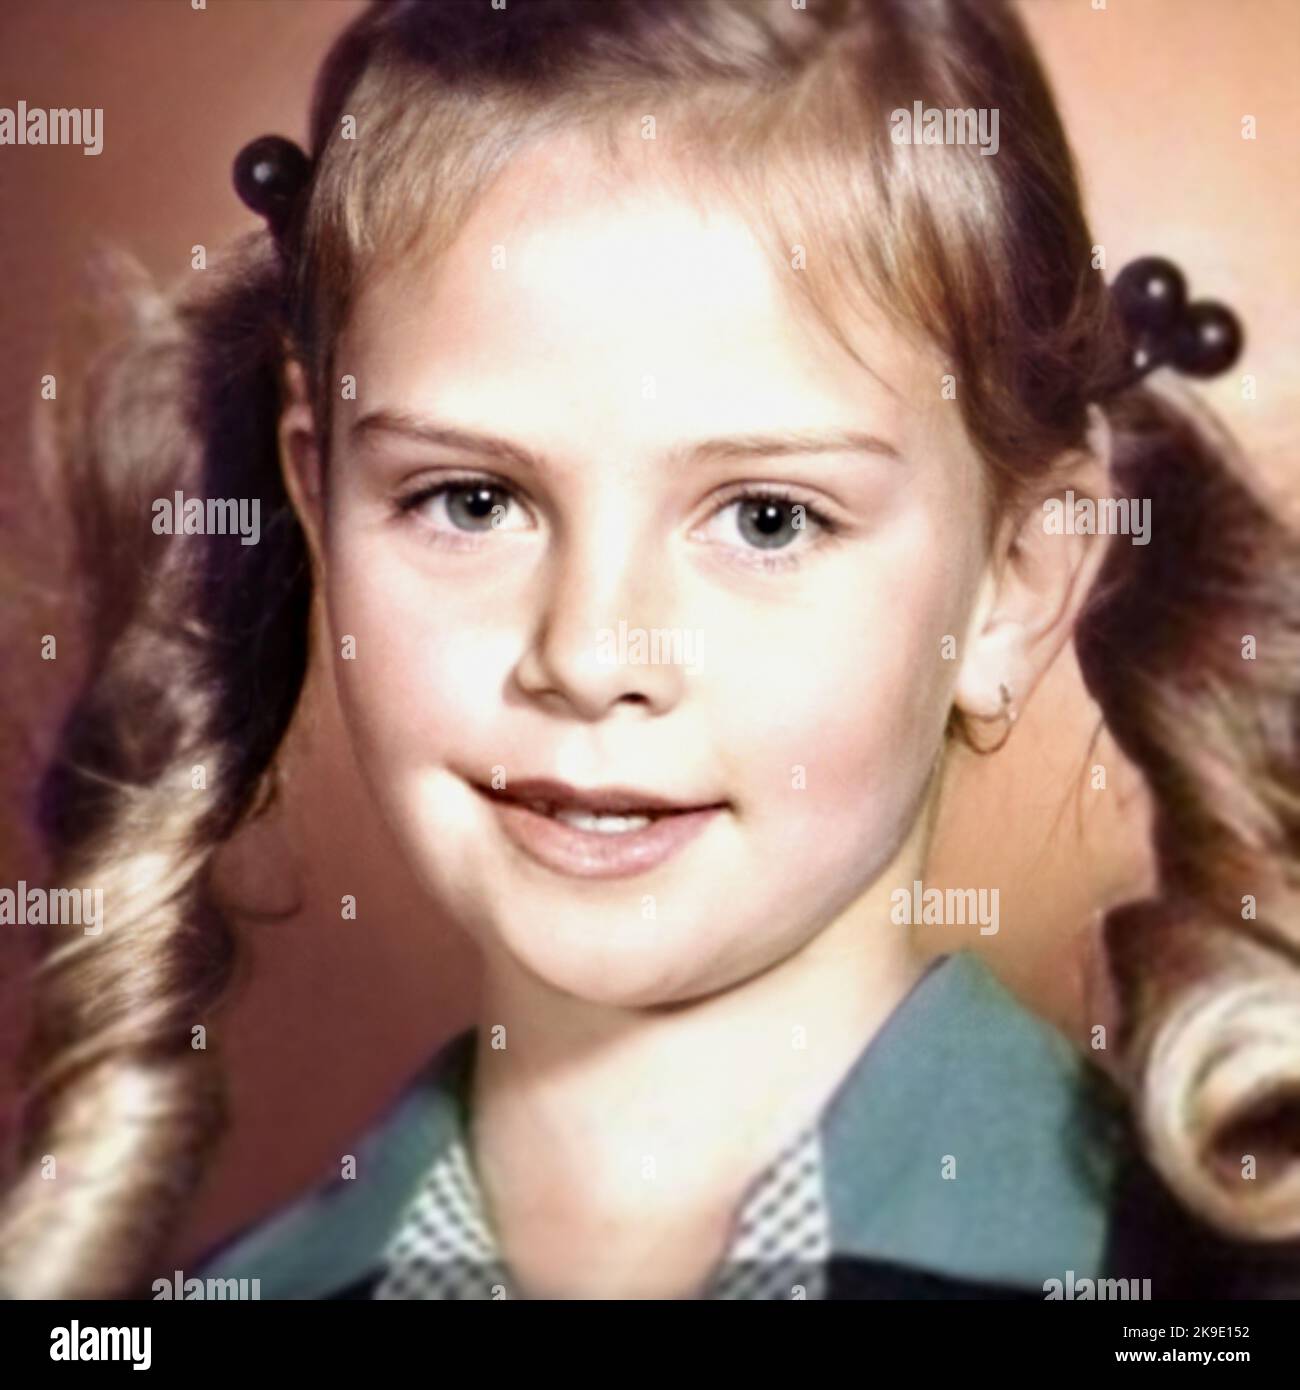 1983 , USA : The celebrated american actress CHARLIZE THERON ( born 7 august 1975 ) when was a young girl , aged 8 . Unknown photographer .- HISTORY - FOTO STORICHE - ATTRICE - MOVIE - CINEMA  - personalità da da giovane giovani - da bambina bambini bambino - personality personalities when was young - SEX SYMBOL - blonde - bionda - smile - sorriso - codini - pony tails - HISTORY - FOTO STORICHE --- ARCHIVIO GBB Stock Photo